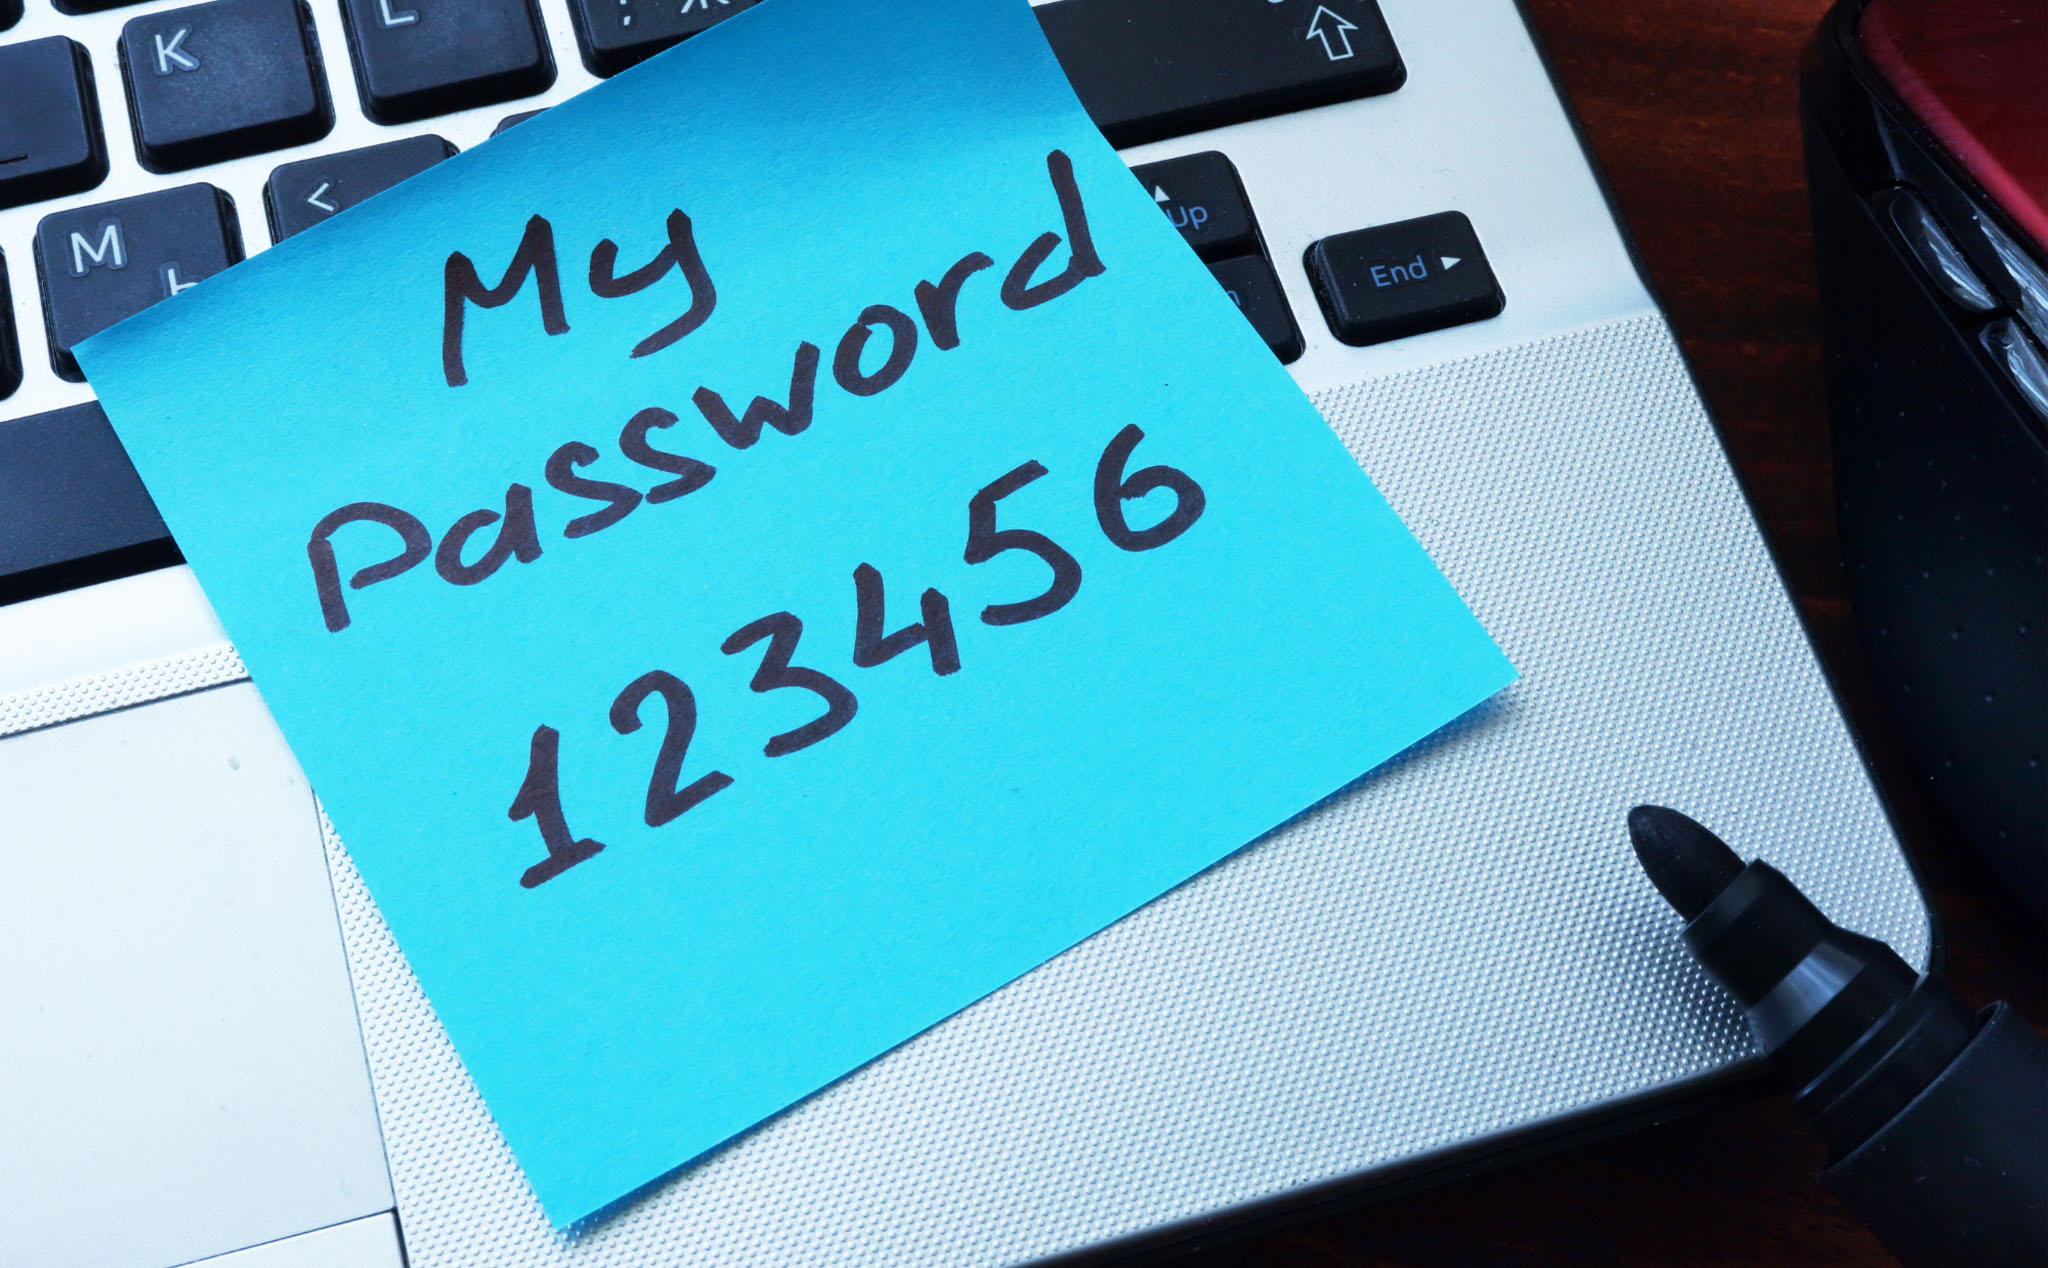 32 cụm password dễ bị đoán nhất, anh em nếu đang dùng xin hãy đổi ngay